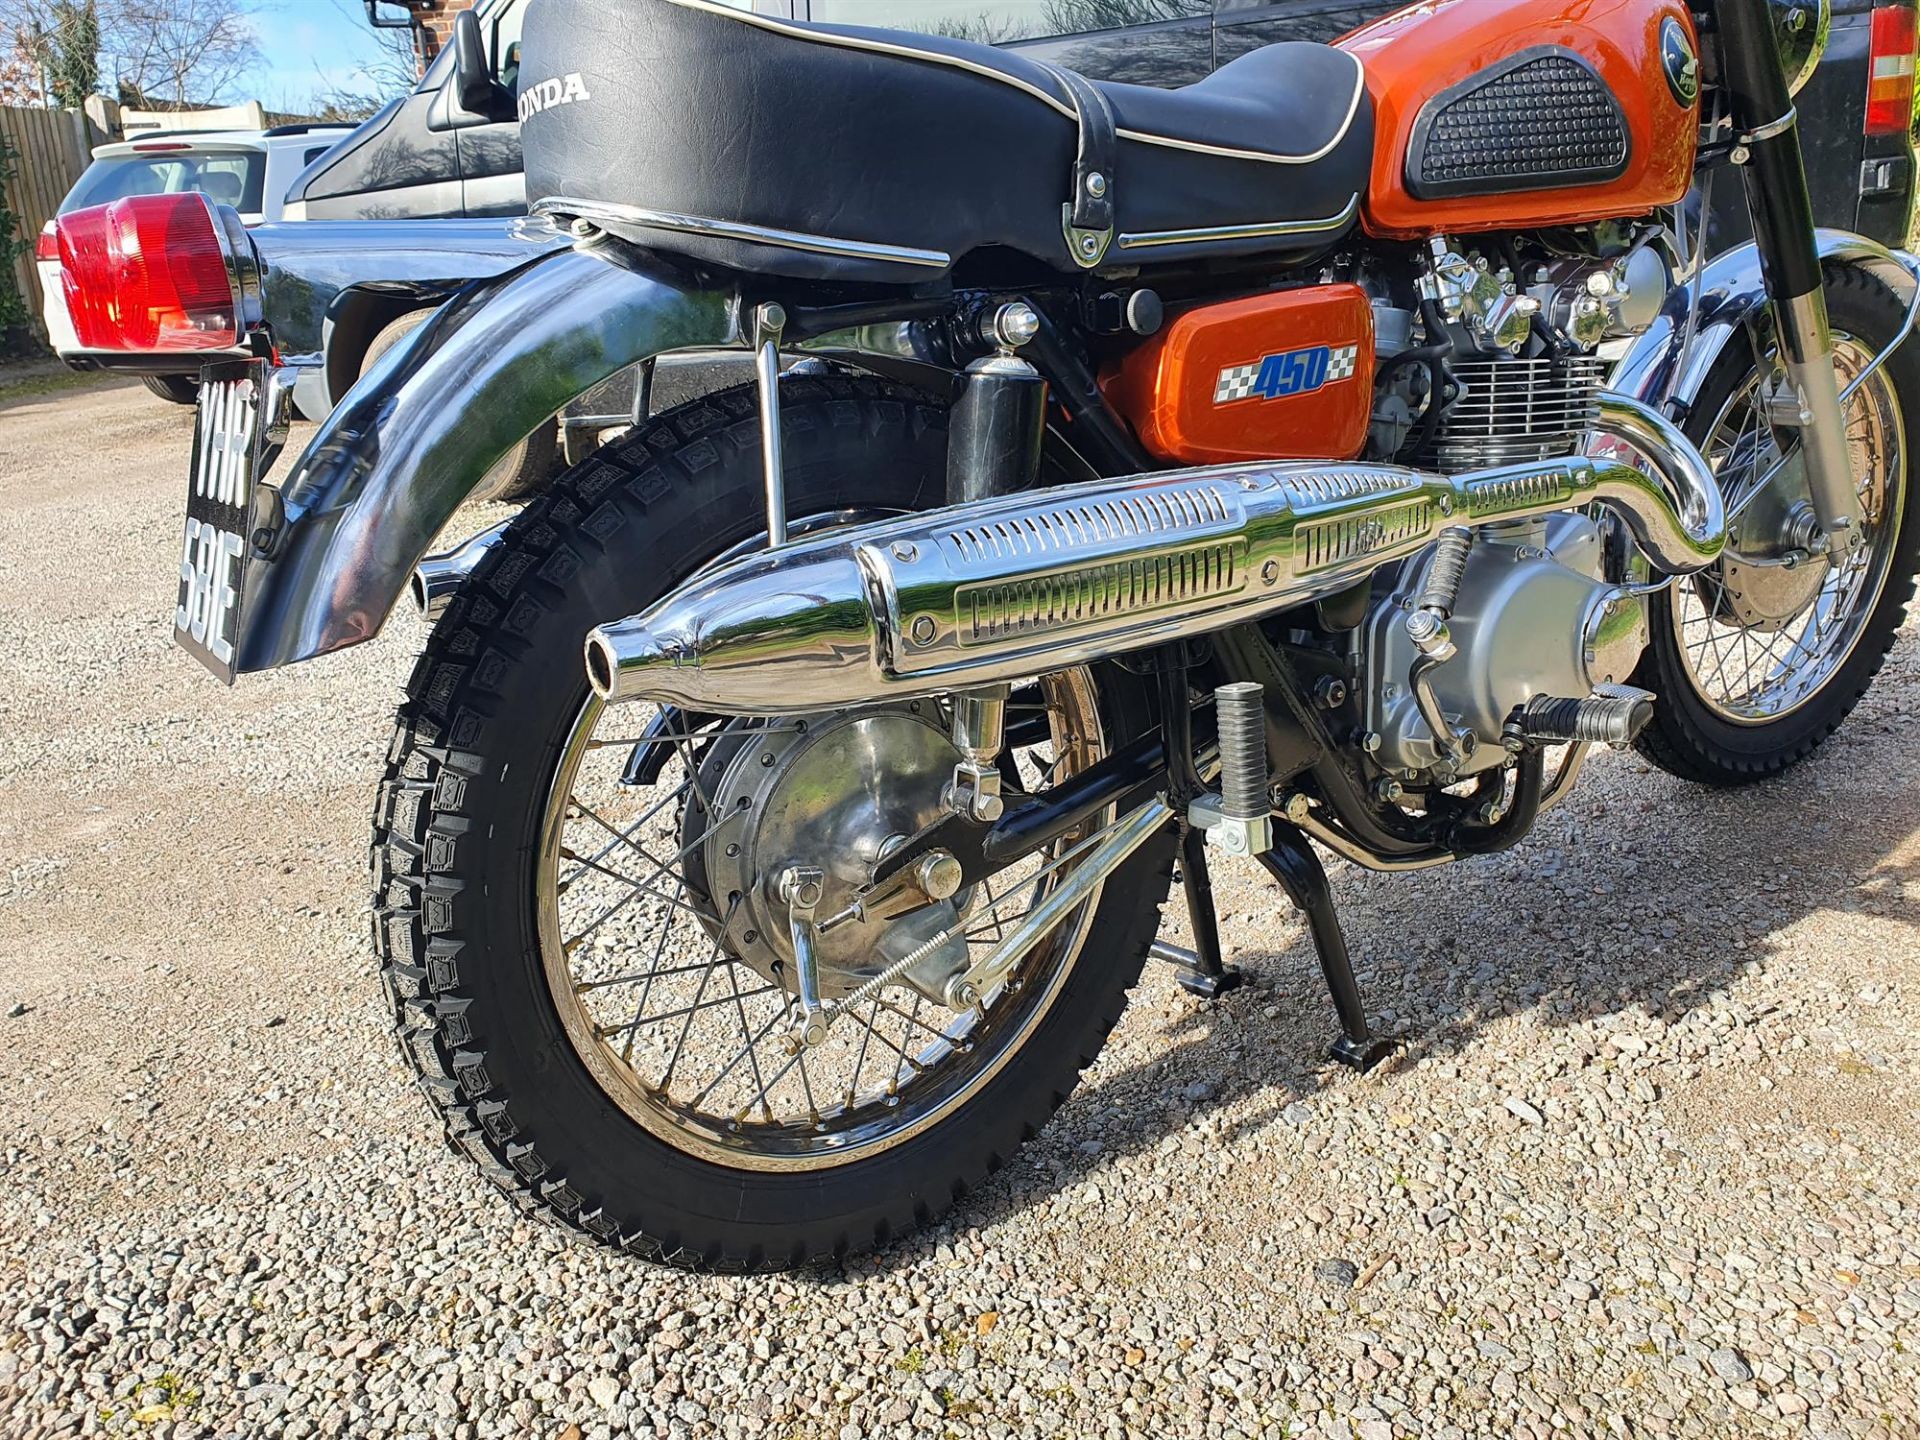 1967 Honda CB450 K0 D-Kit 444cc - Image 4 of 10